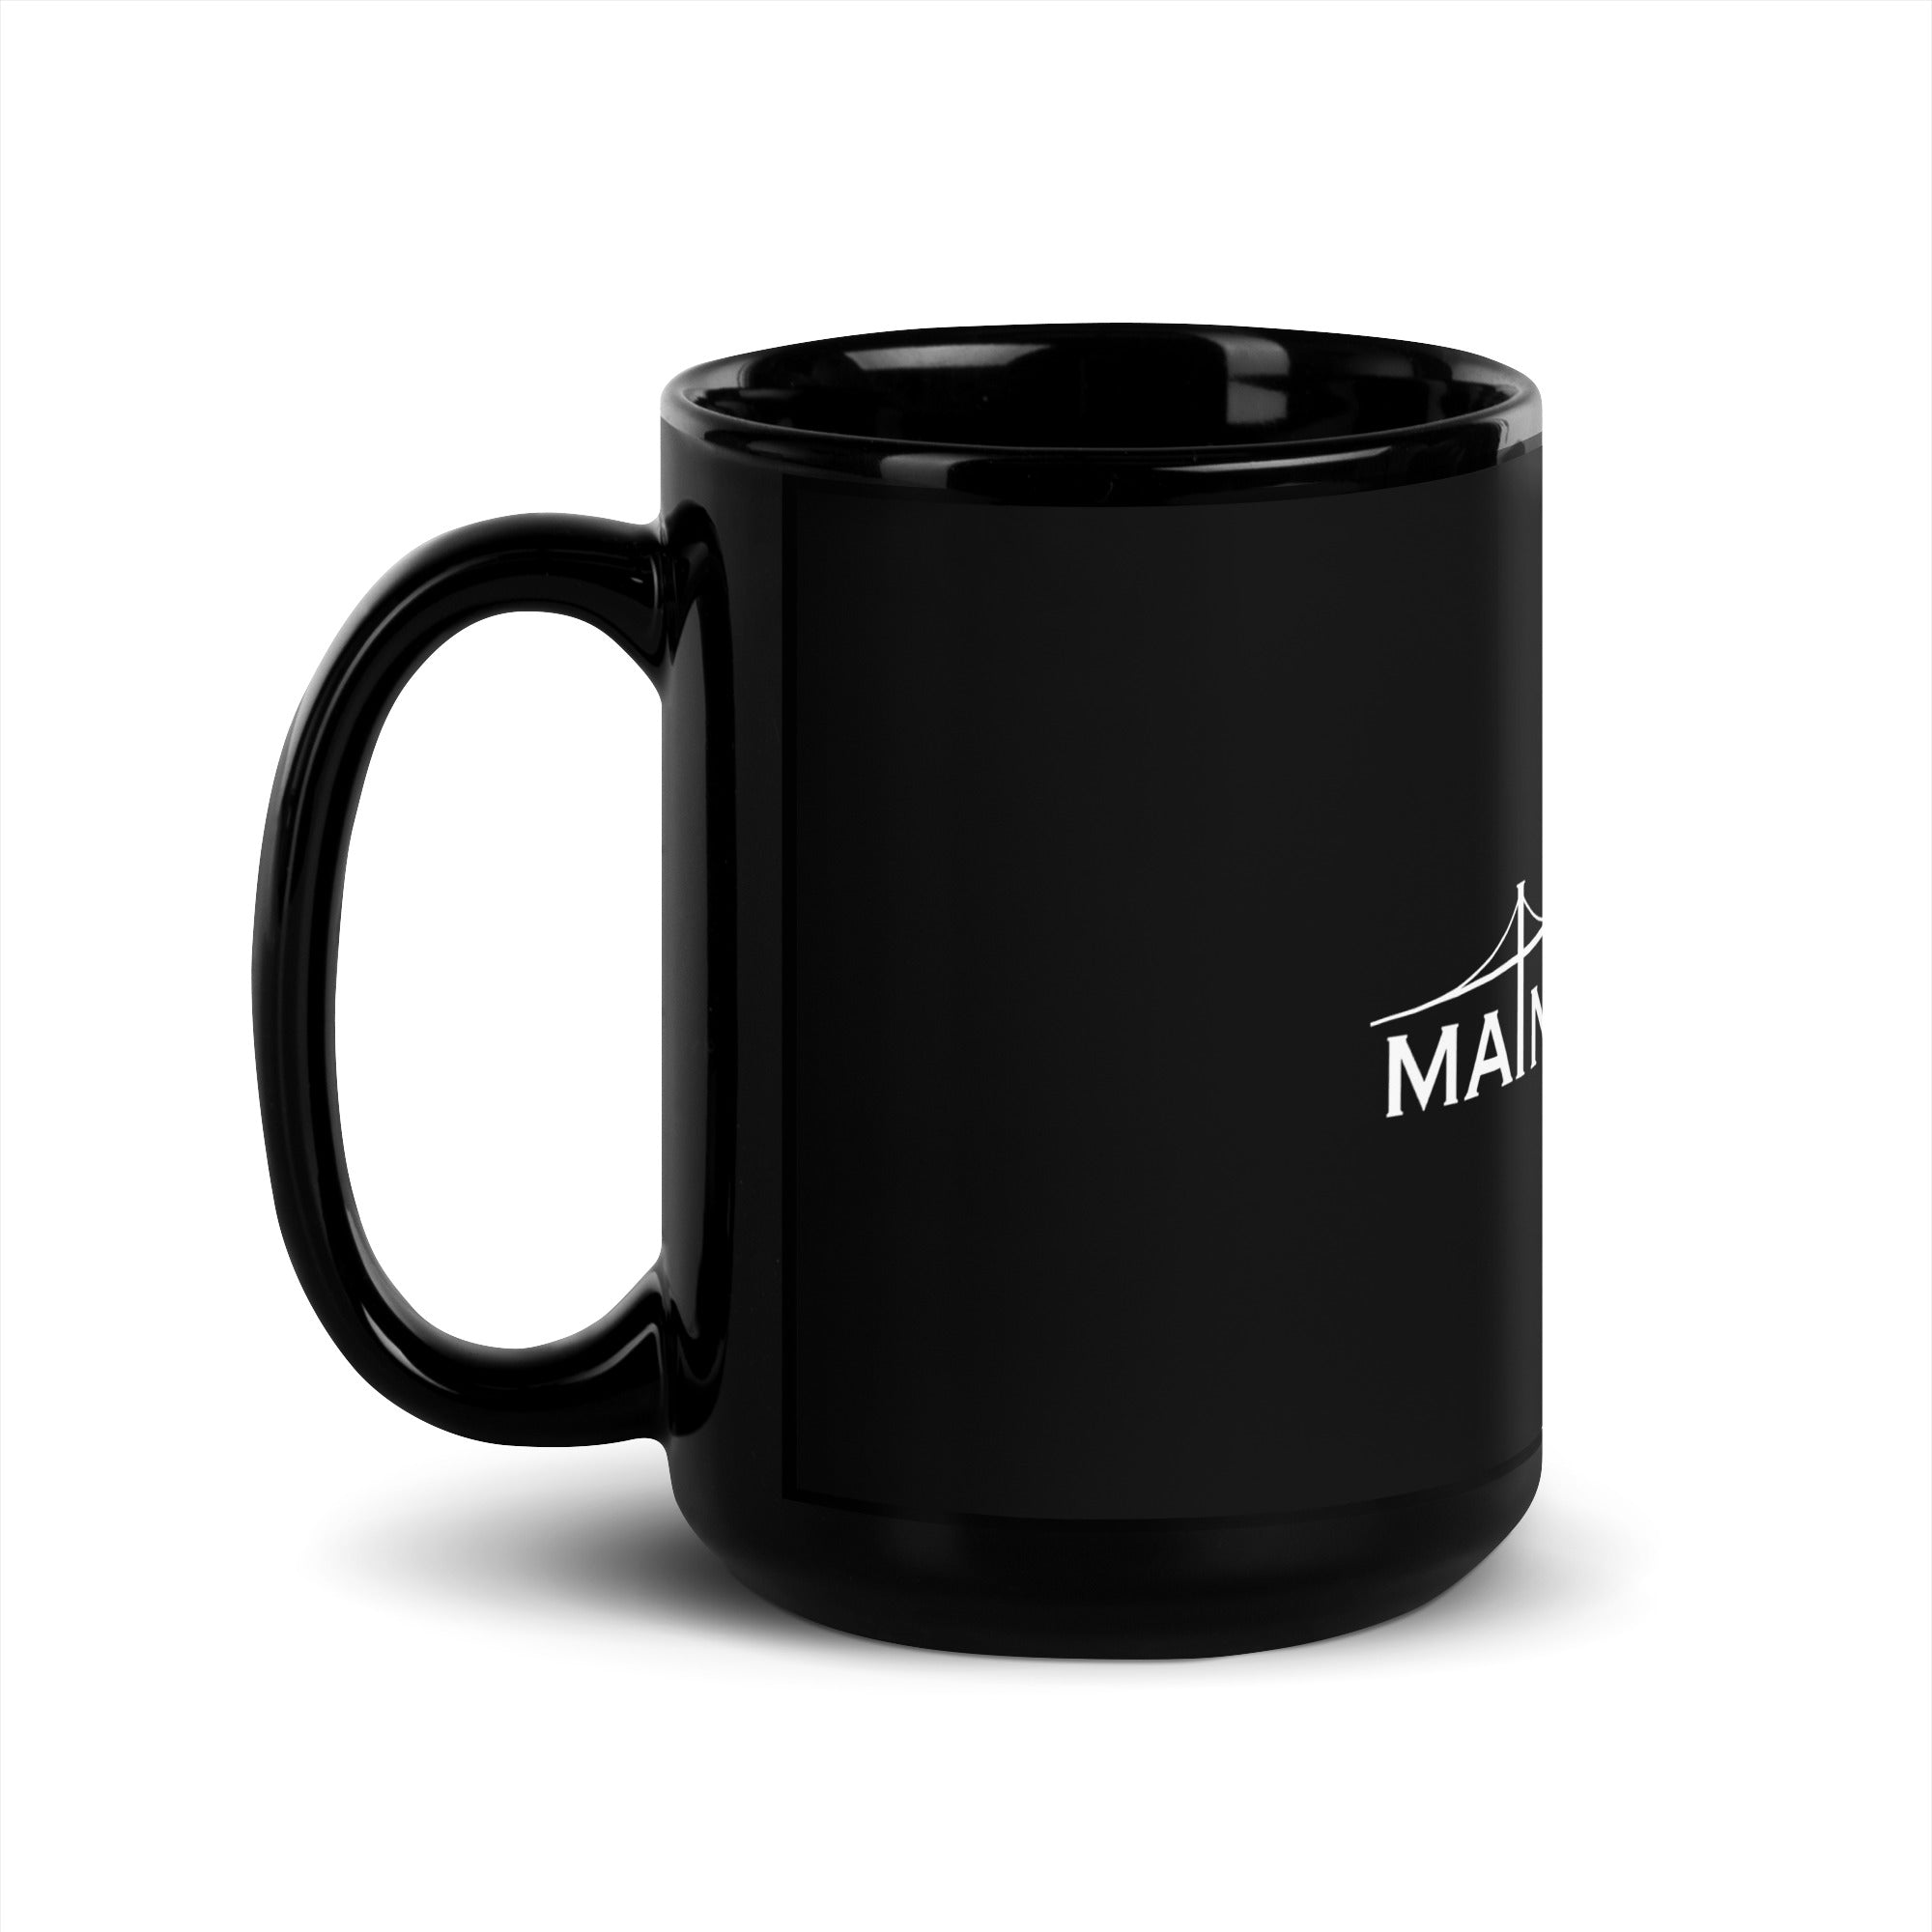 MaineWorks Mug